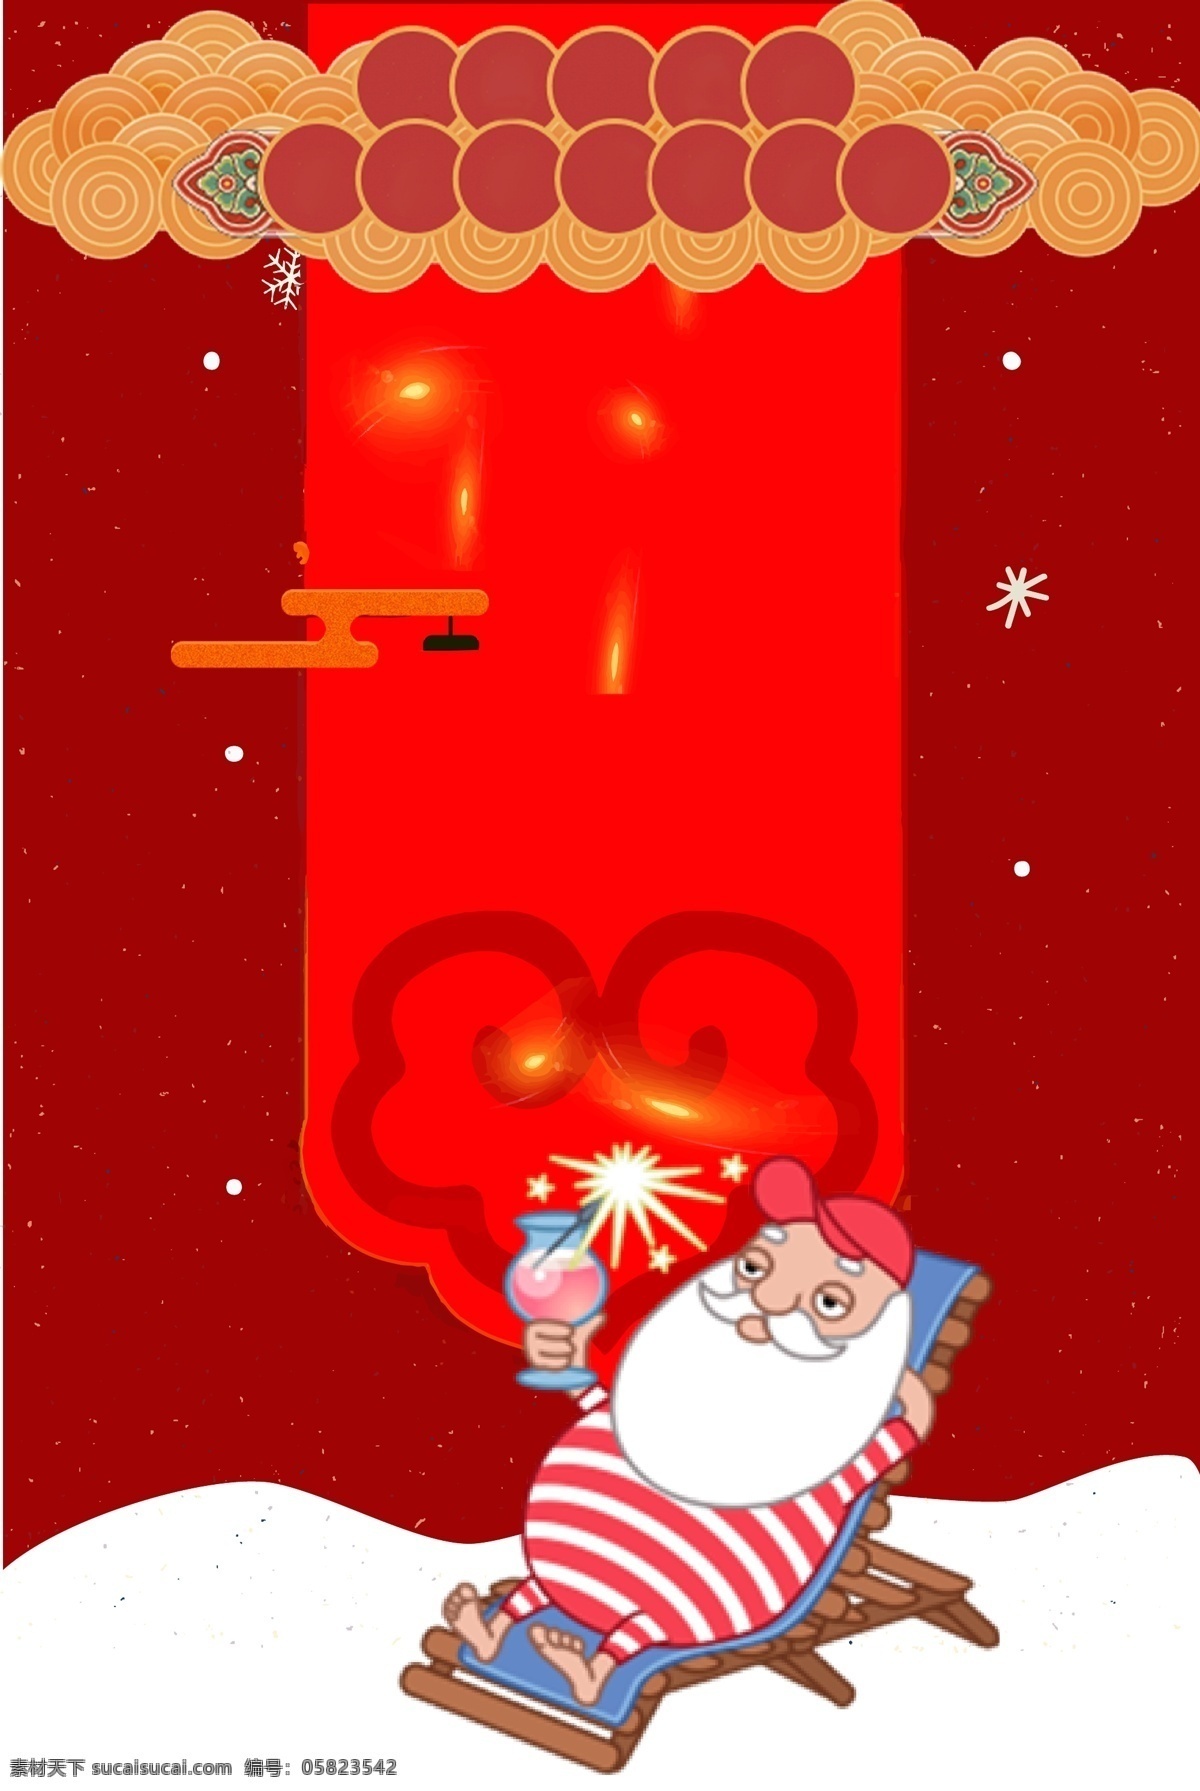 卡通 冬天 圣诞节 圣诞老人 背景 圣诞素材 圣诞节促销 圣诞快乐 圣诞节展板 新年活动背景